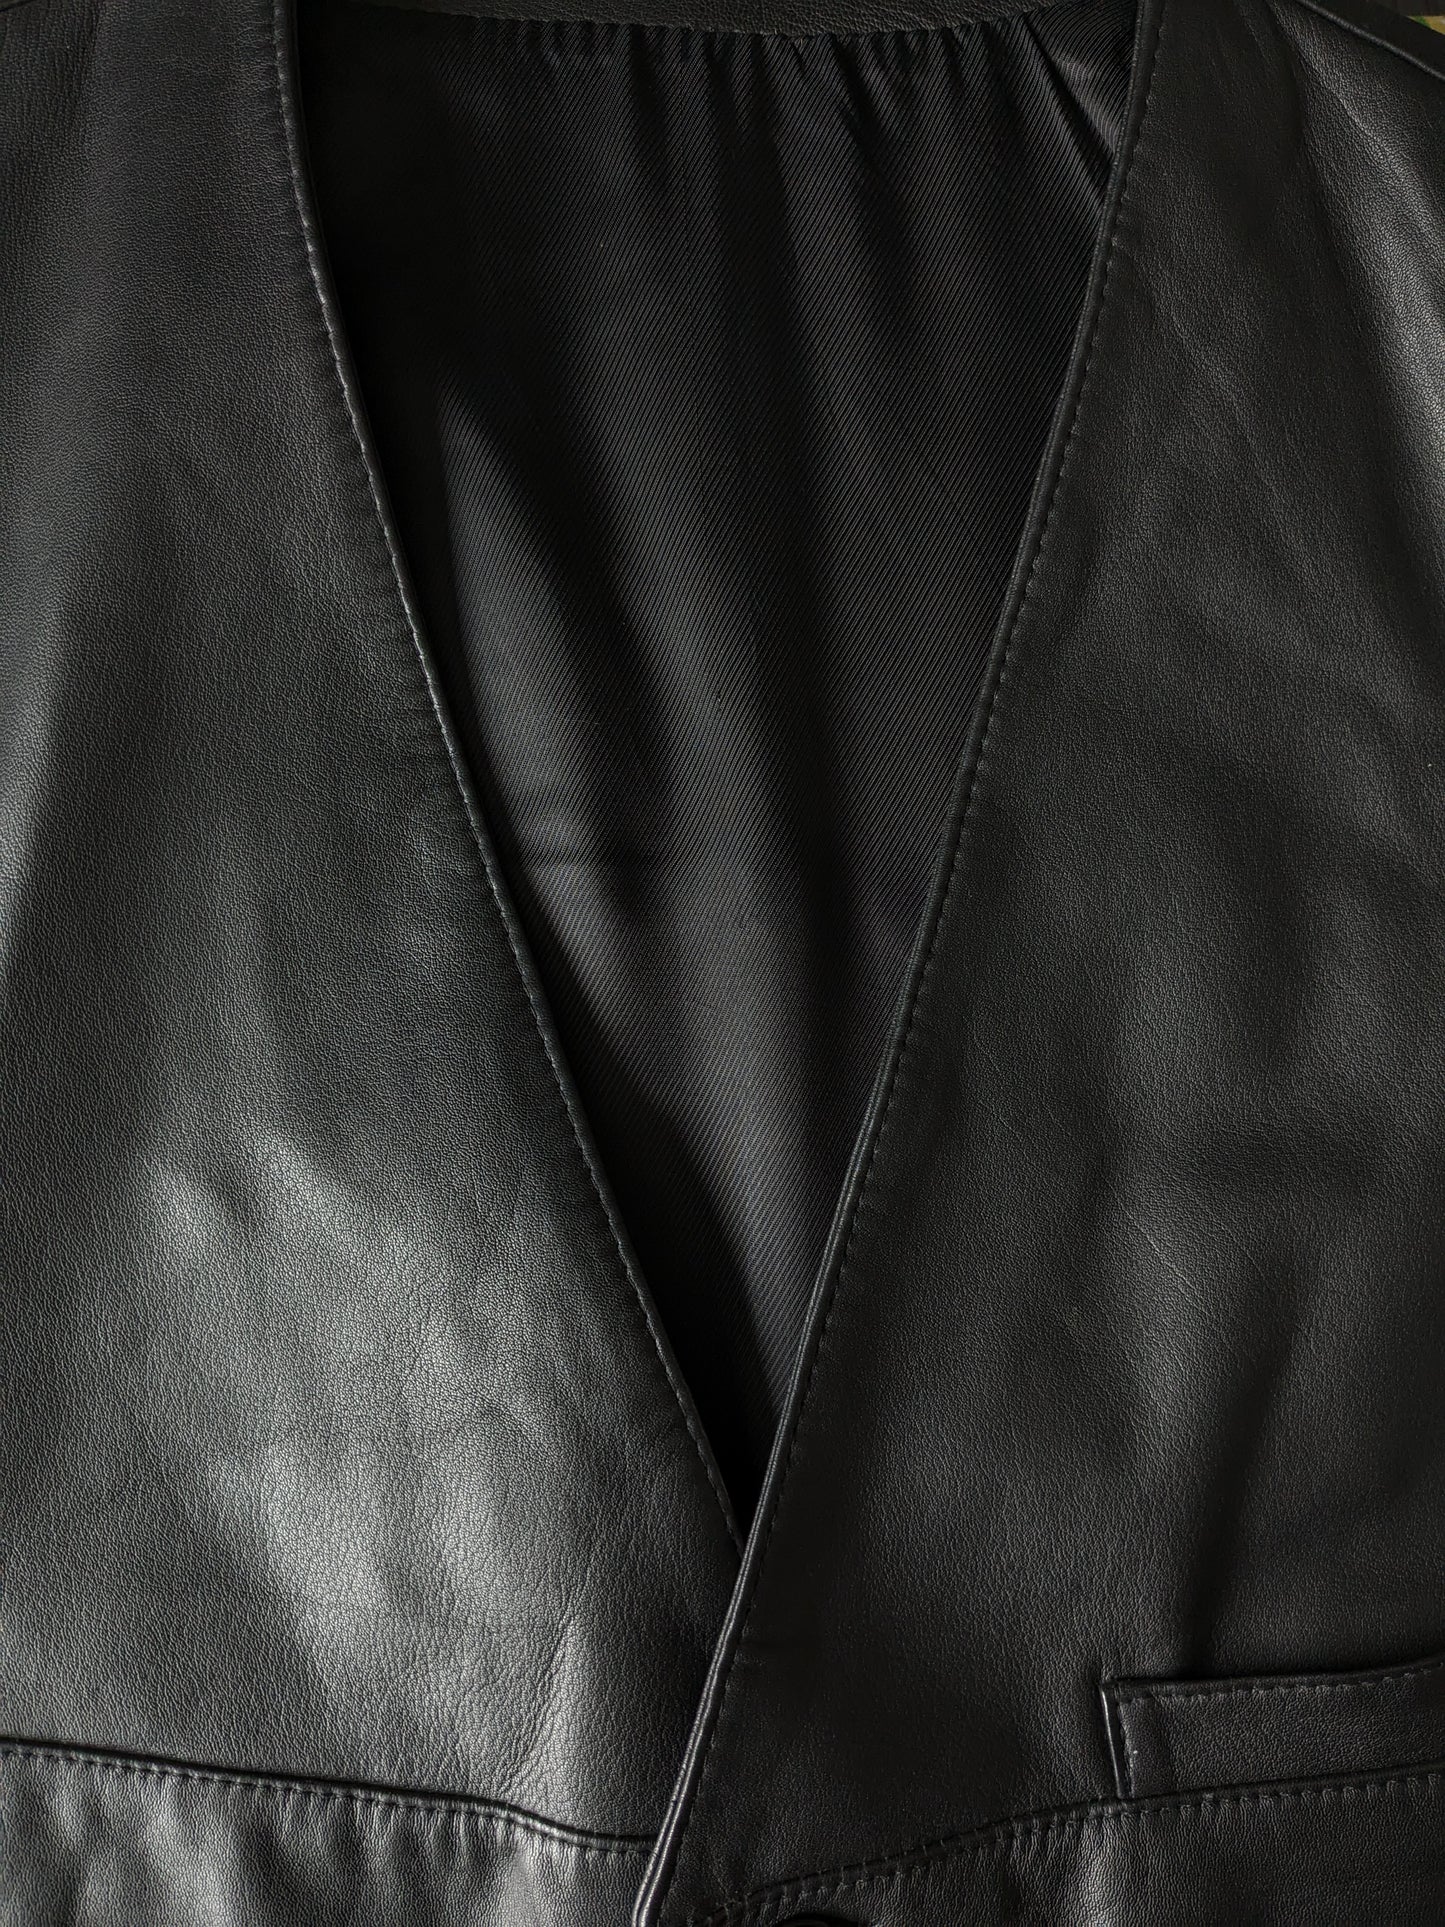 Chaleco de cuero Striwa de doble lado con 2 bolsillos internos. Negro. Tamaño L. #319